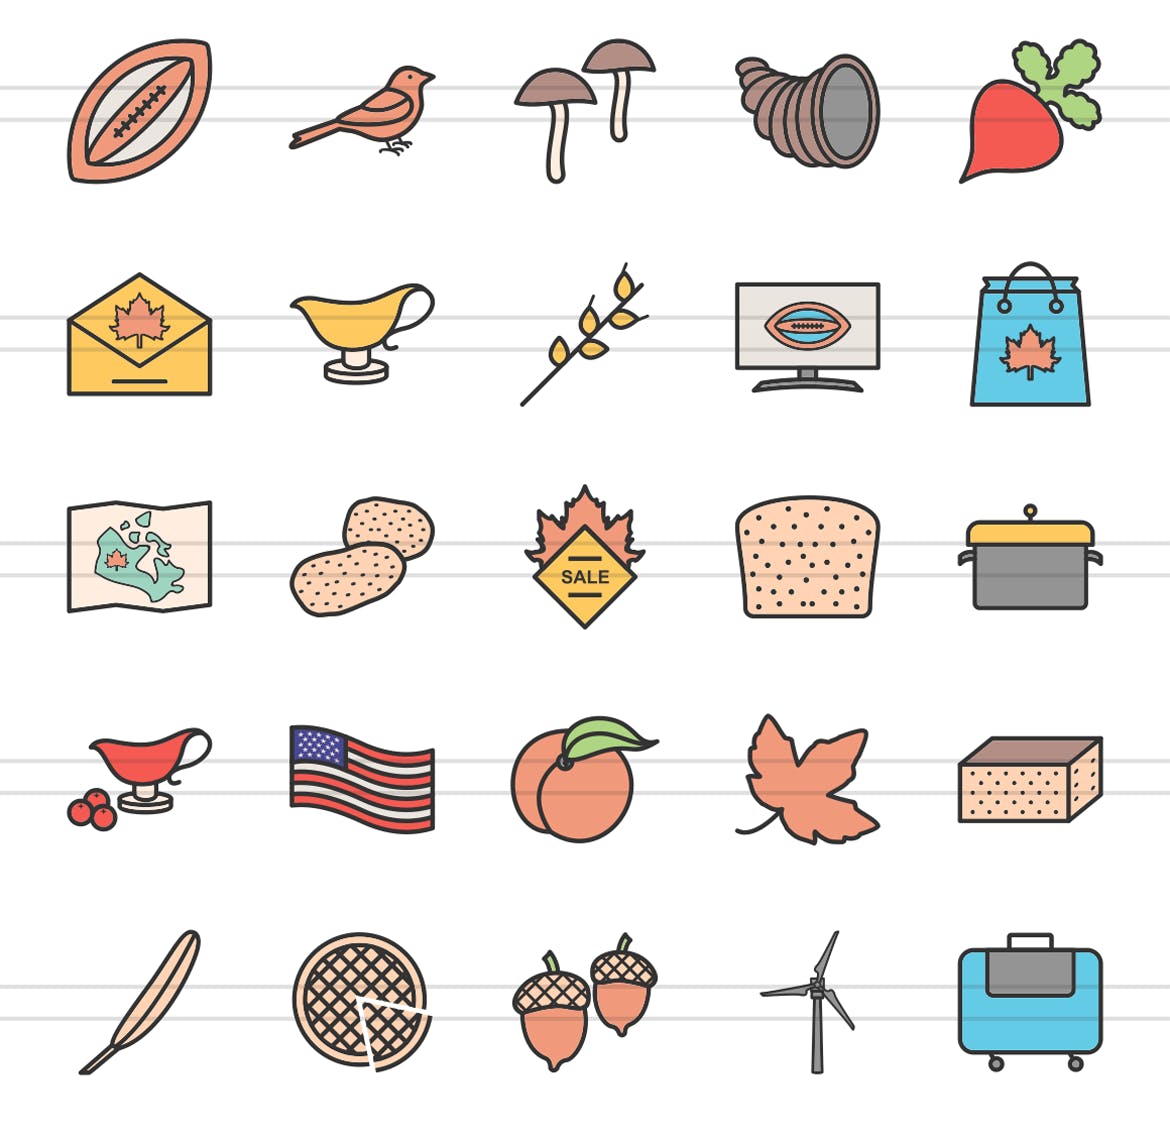 50枚感恩节颜色填充线性第一素材精选图标素材 50 Thanksgiving Filled Line Icons插图(2)